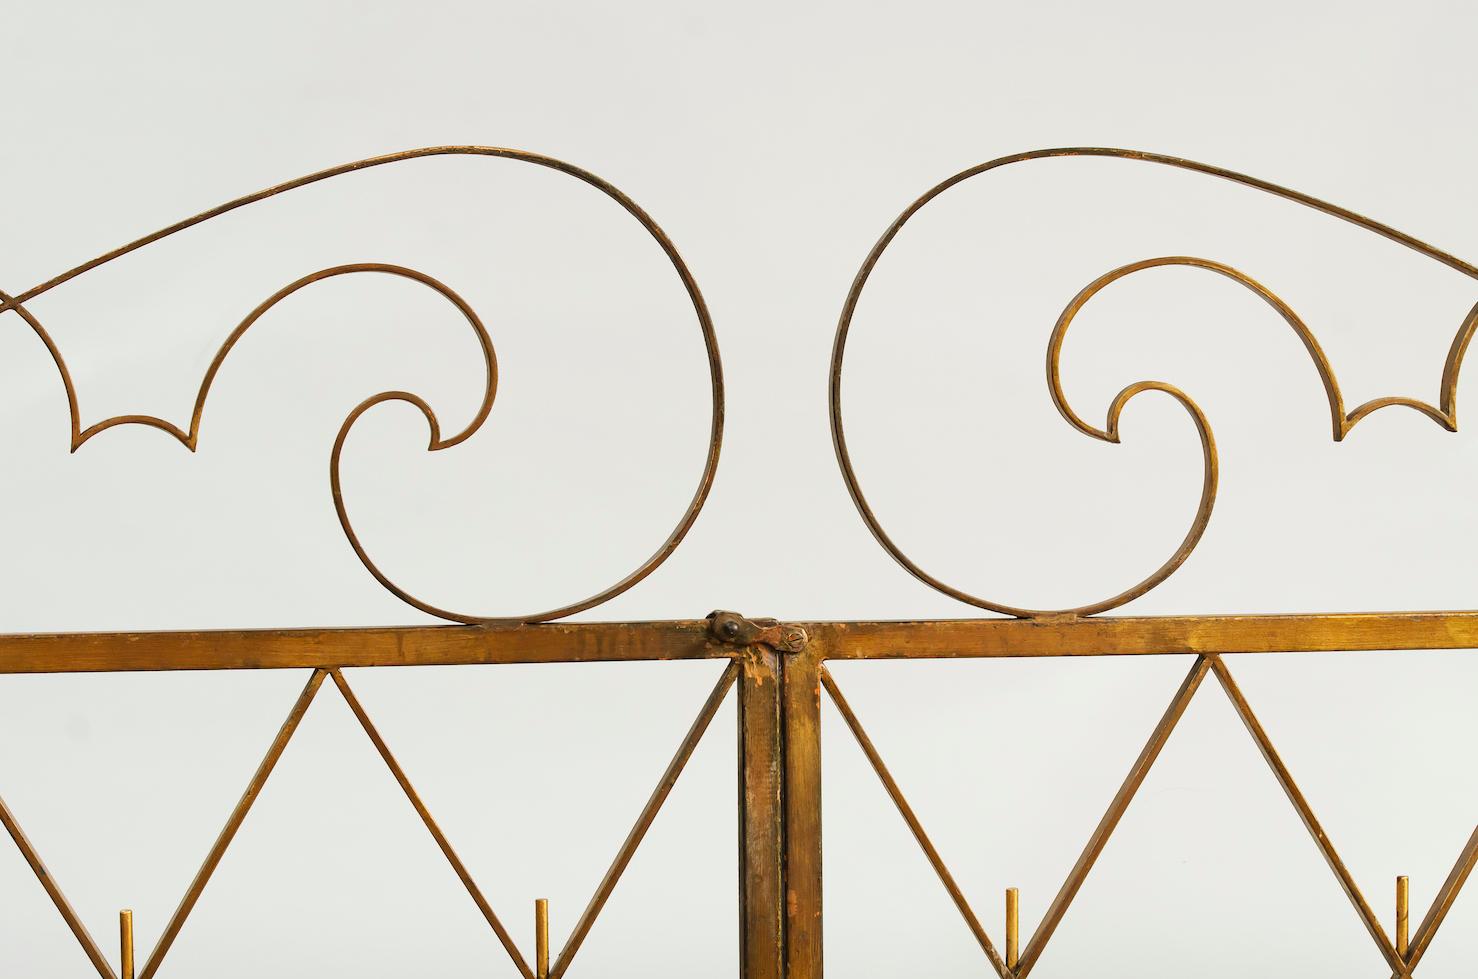 Pair of Art deco Gilded iron gates France 1940s
Measures: W. 2 x 102 cm, total 204 cm
H. 125 cm (highest part).